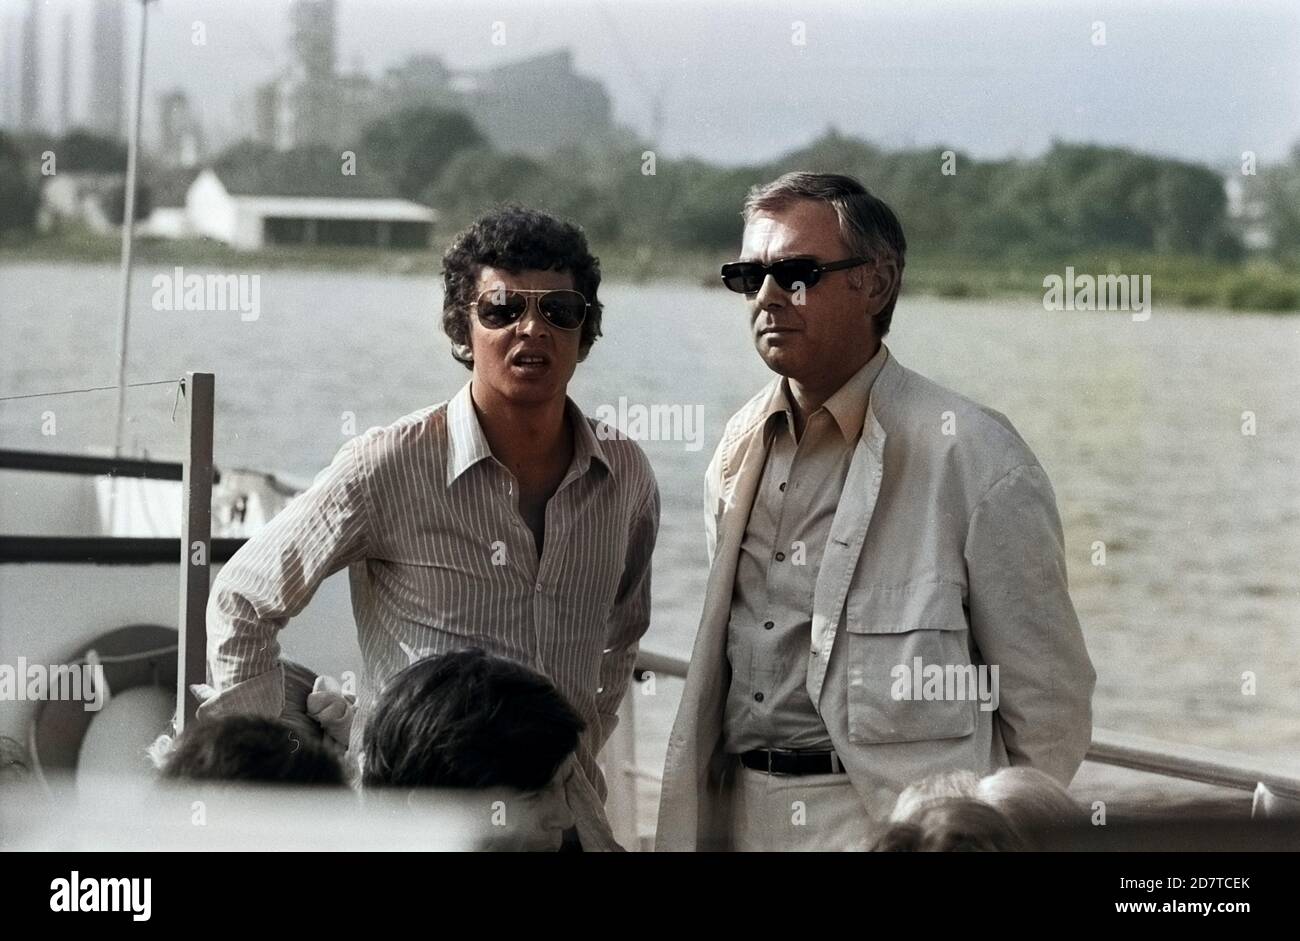 Der deutsche Schauspieler Michael Ande (Links), Deutschland 1970er Jahre. Attore tedesco Michael Ande (a sinistra), Germania anni '70. Foto Stock